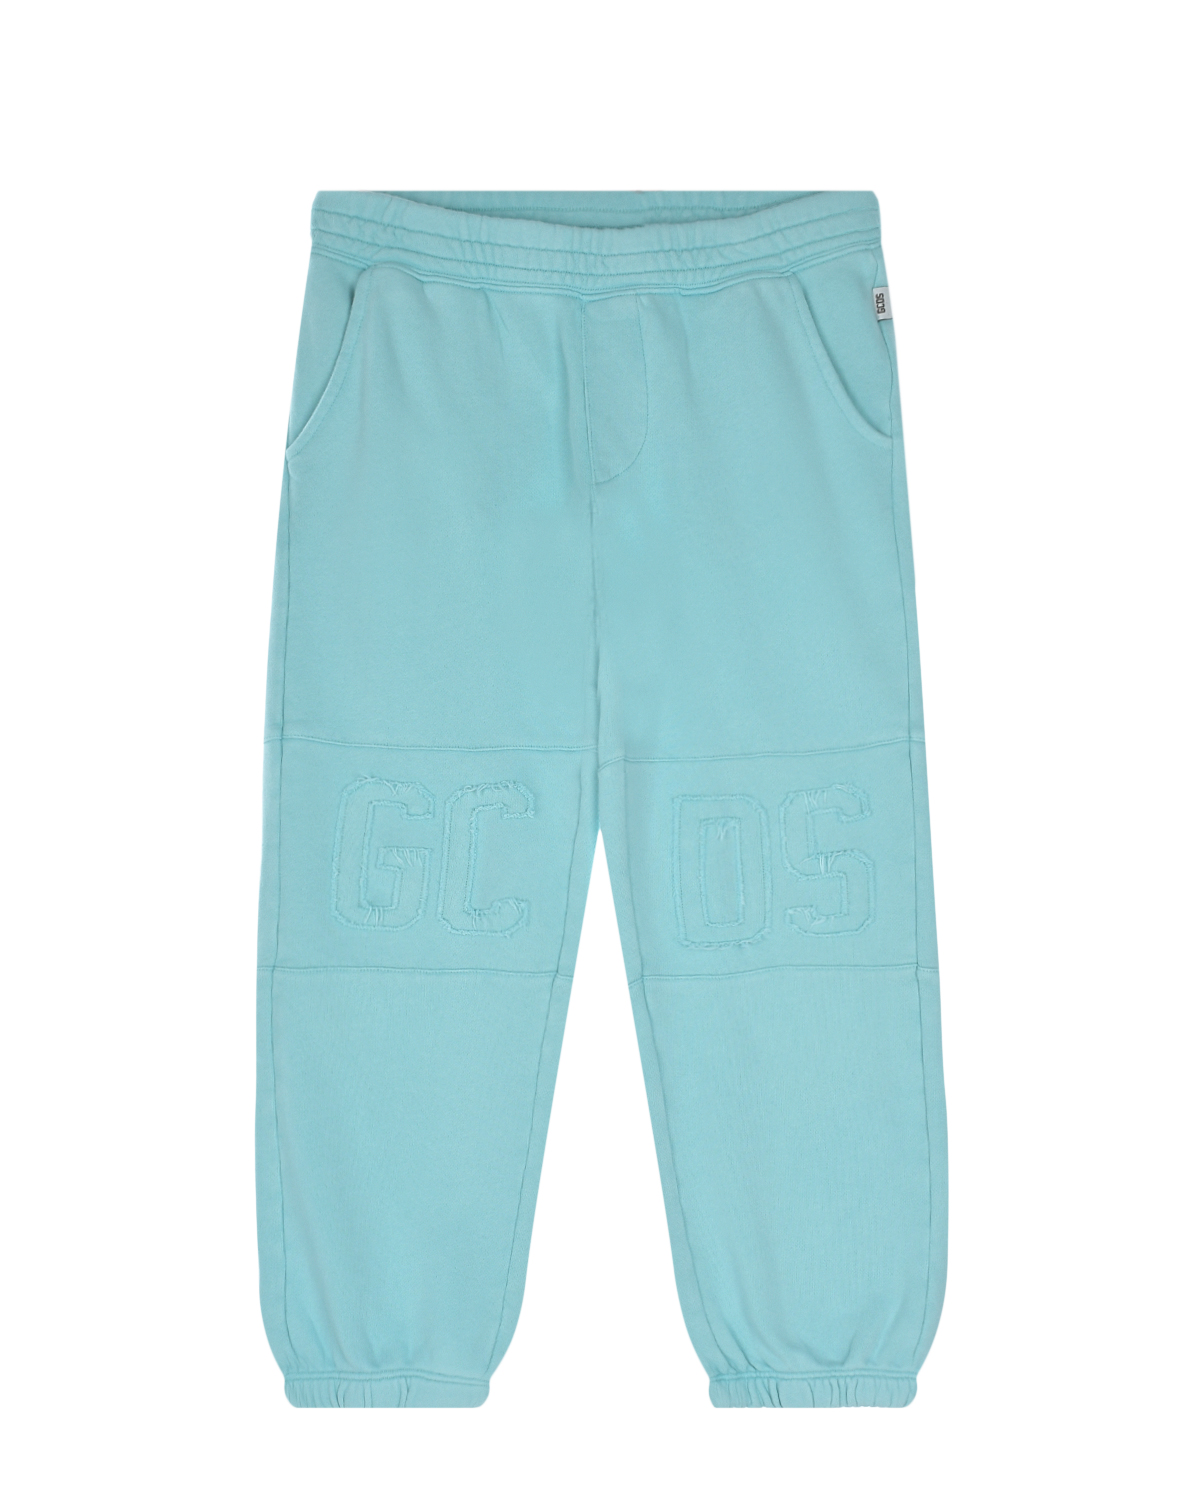 Голубые спортивные брюки GCDS, размер 116, цвет голубой